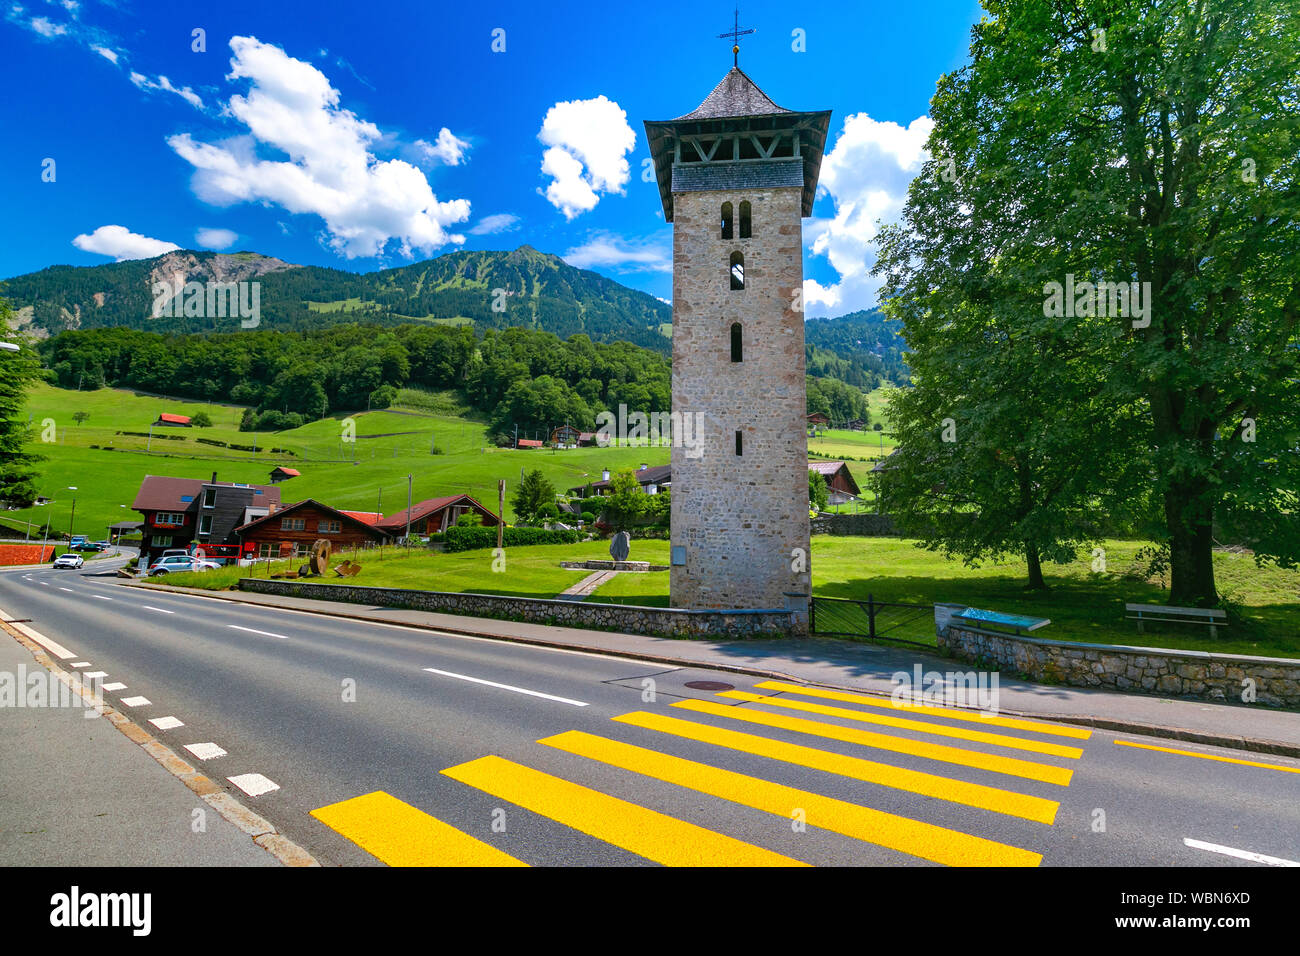 Swiss village Lungern, Switzerland Stock Photo